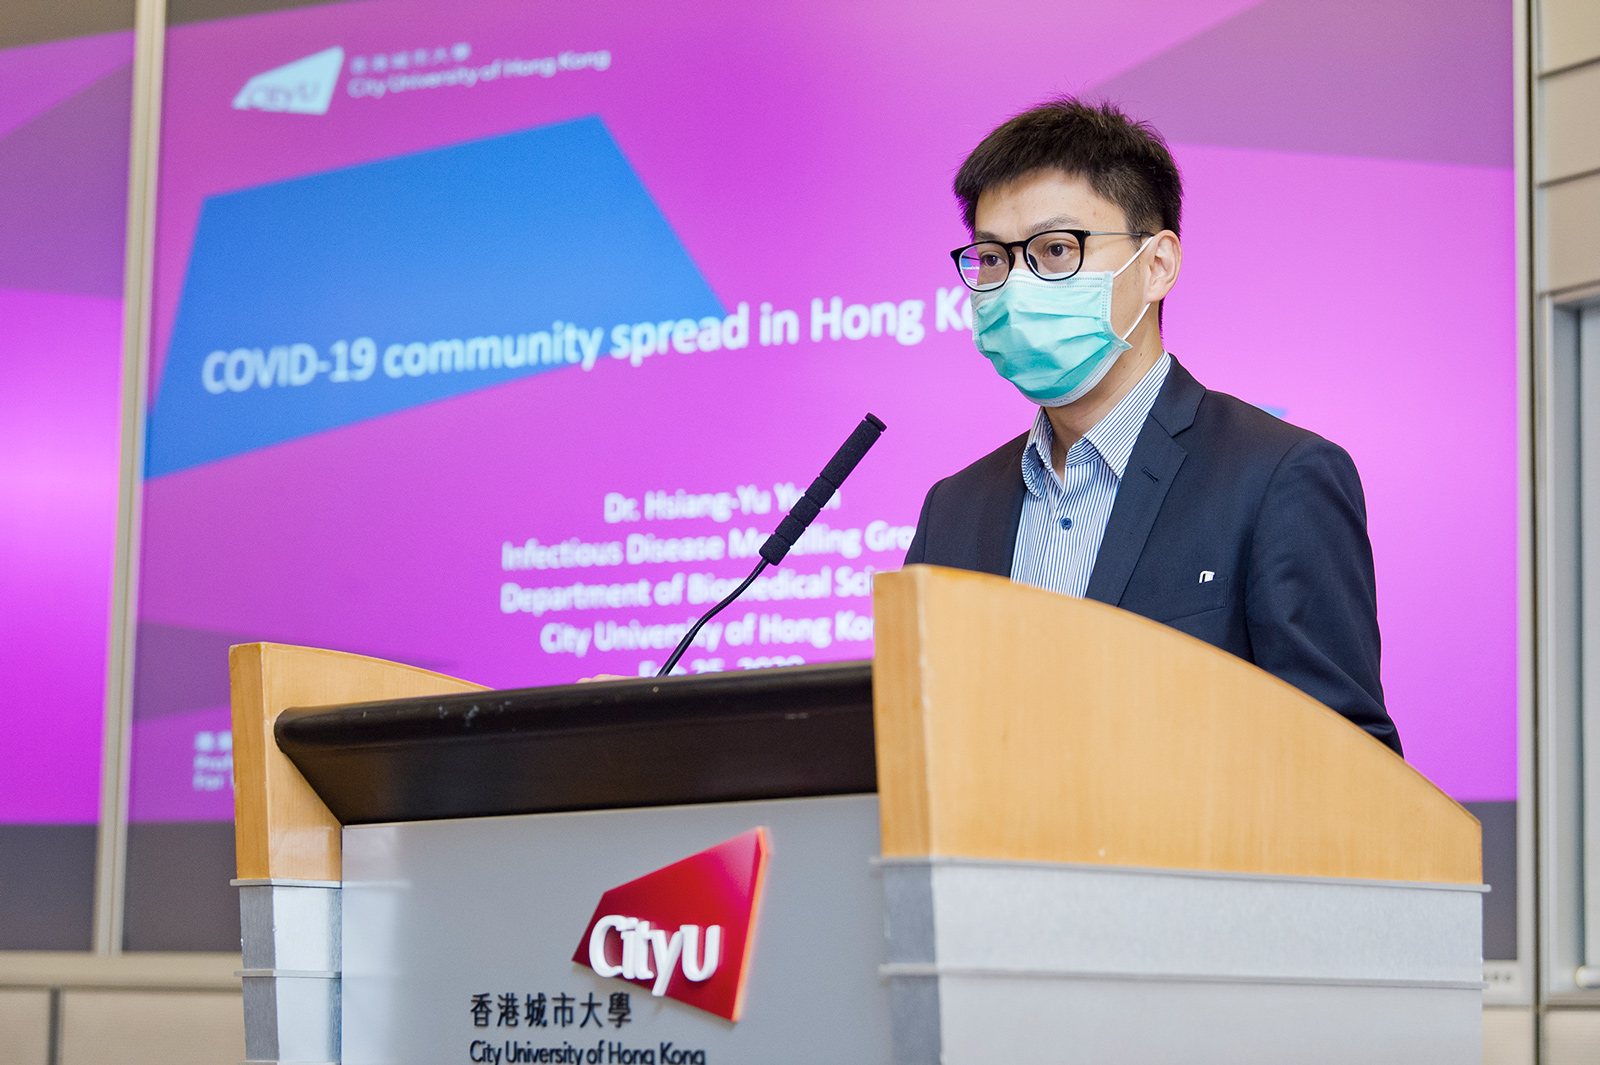 Dr Sean Yuan Hsiang-yu, cityu